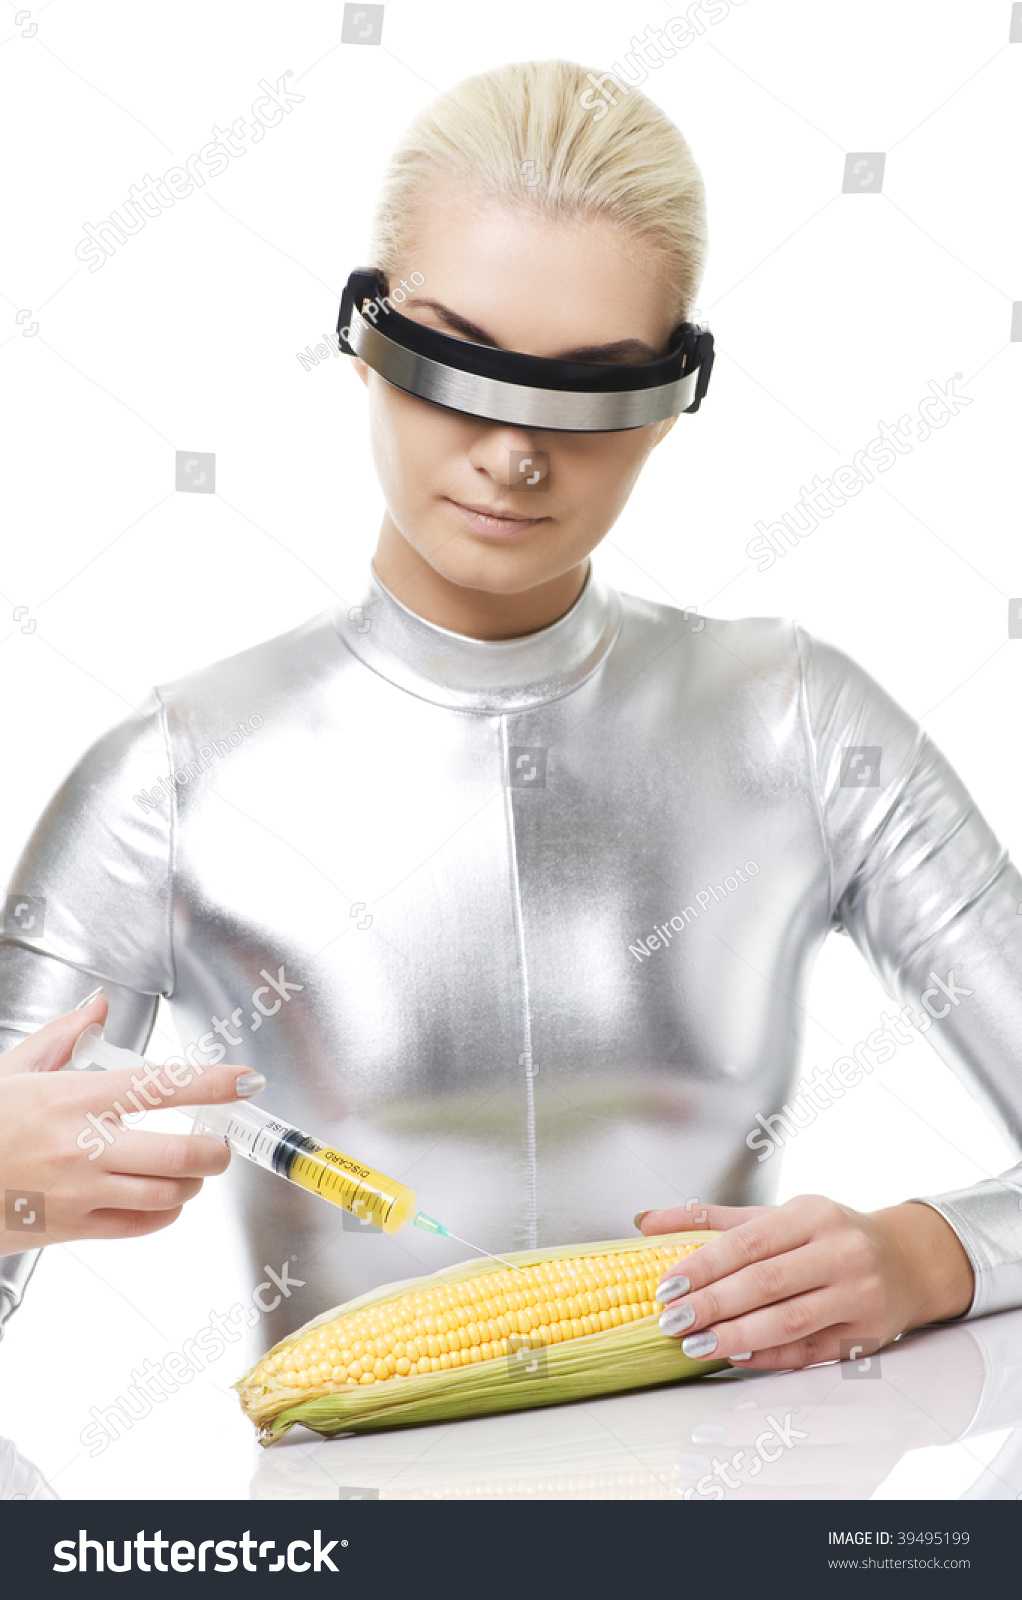 Corn Future